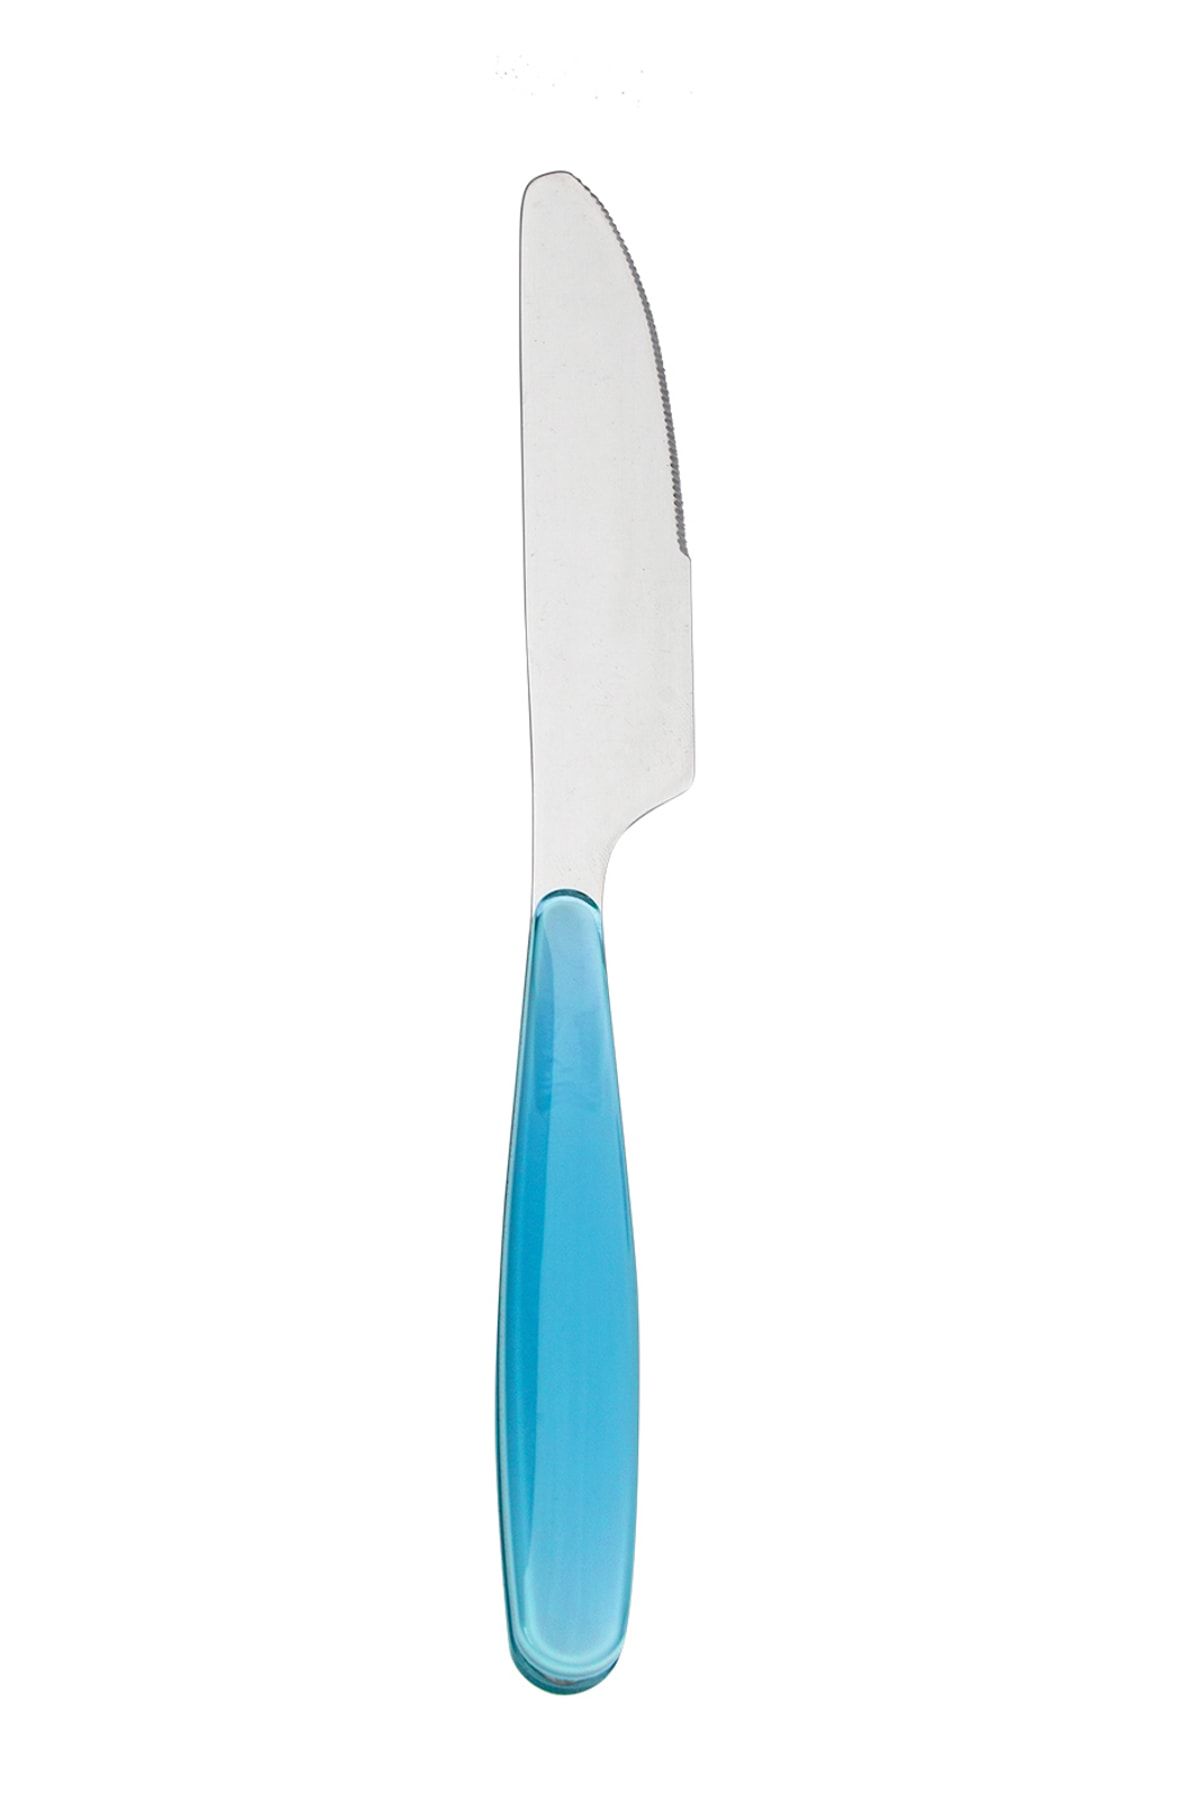 Karaca Linda Mavi Yemek Bıçağı